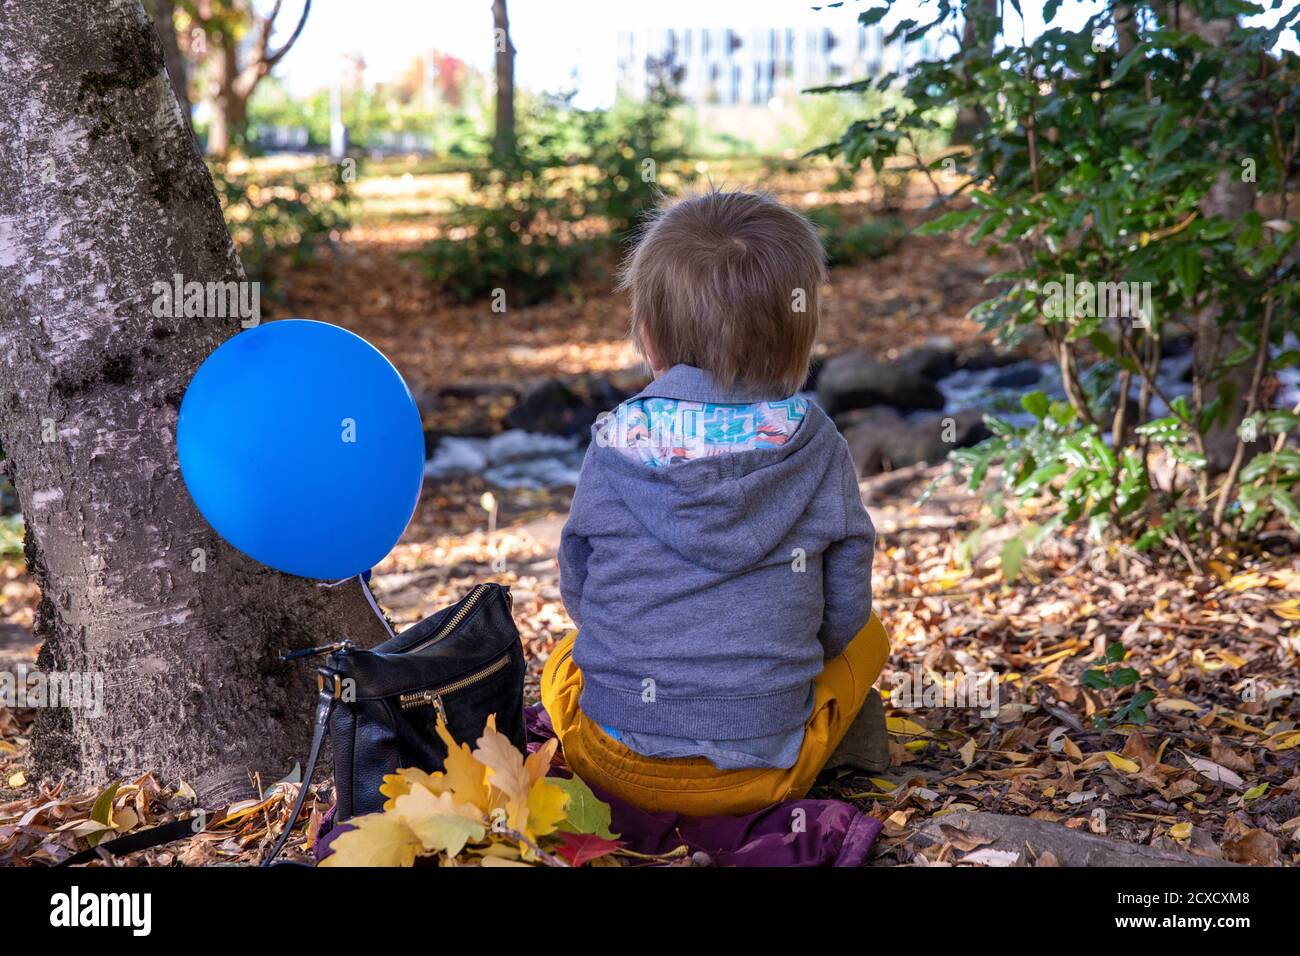 Foto eines kleinen einsamen Jungen in einer grauen Jacke und einer orangen Hose, der auf dem Boden neben einem Park-Bach sitzt. Blauer Ballon an eine Tasche neben ihm gebunden. Stockfoto